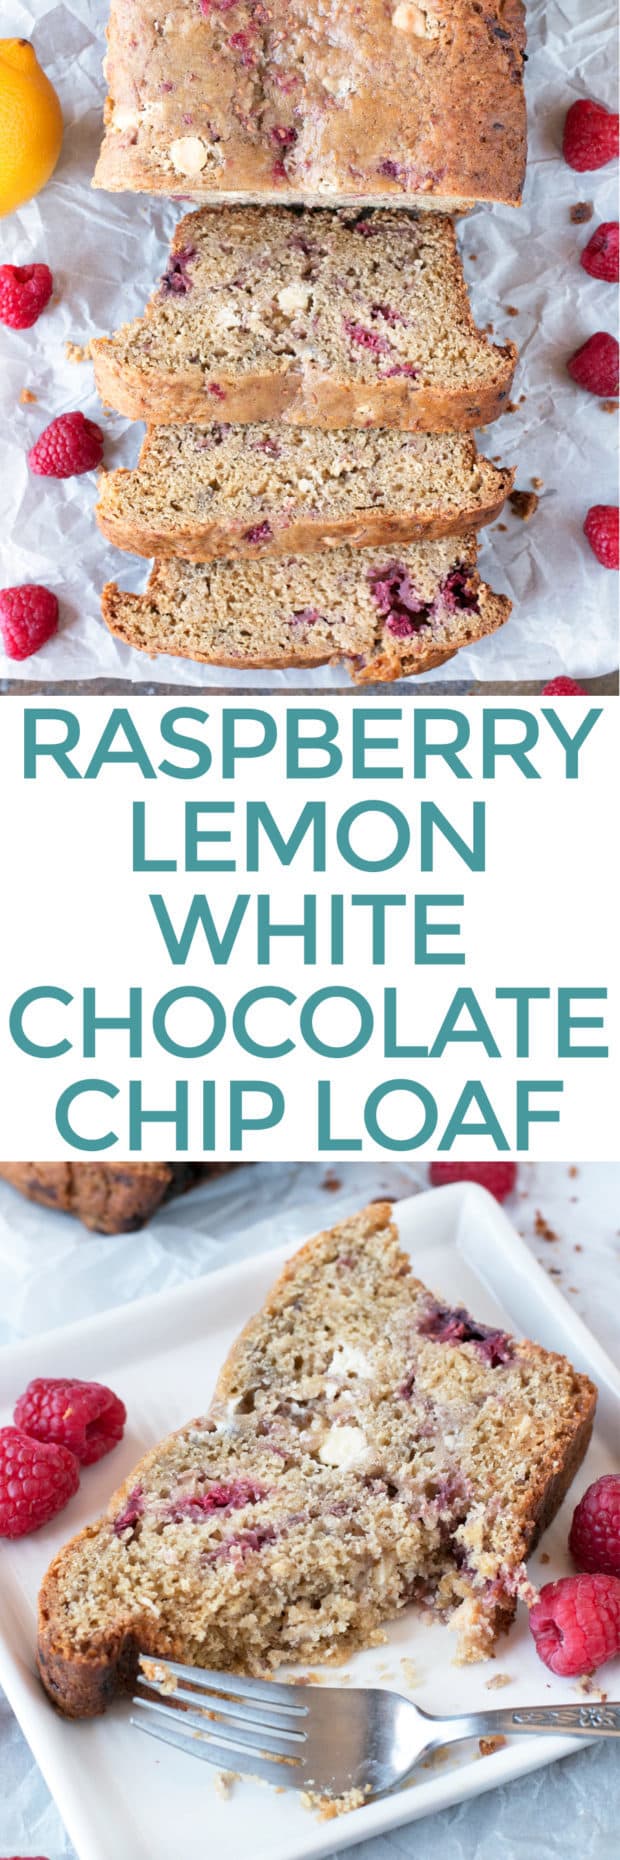 Raspberry Lemon White Chocolate Chip Loaf | cakenknife.com #breakfast #brunch #bread